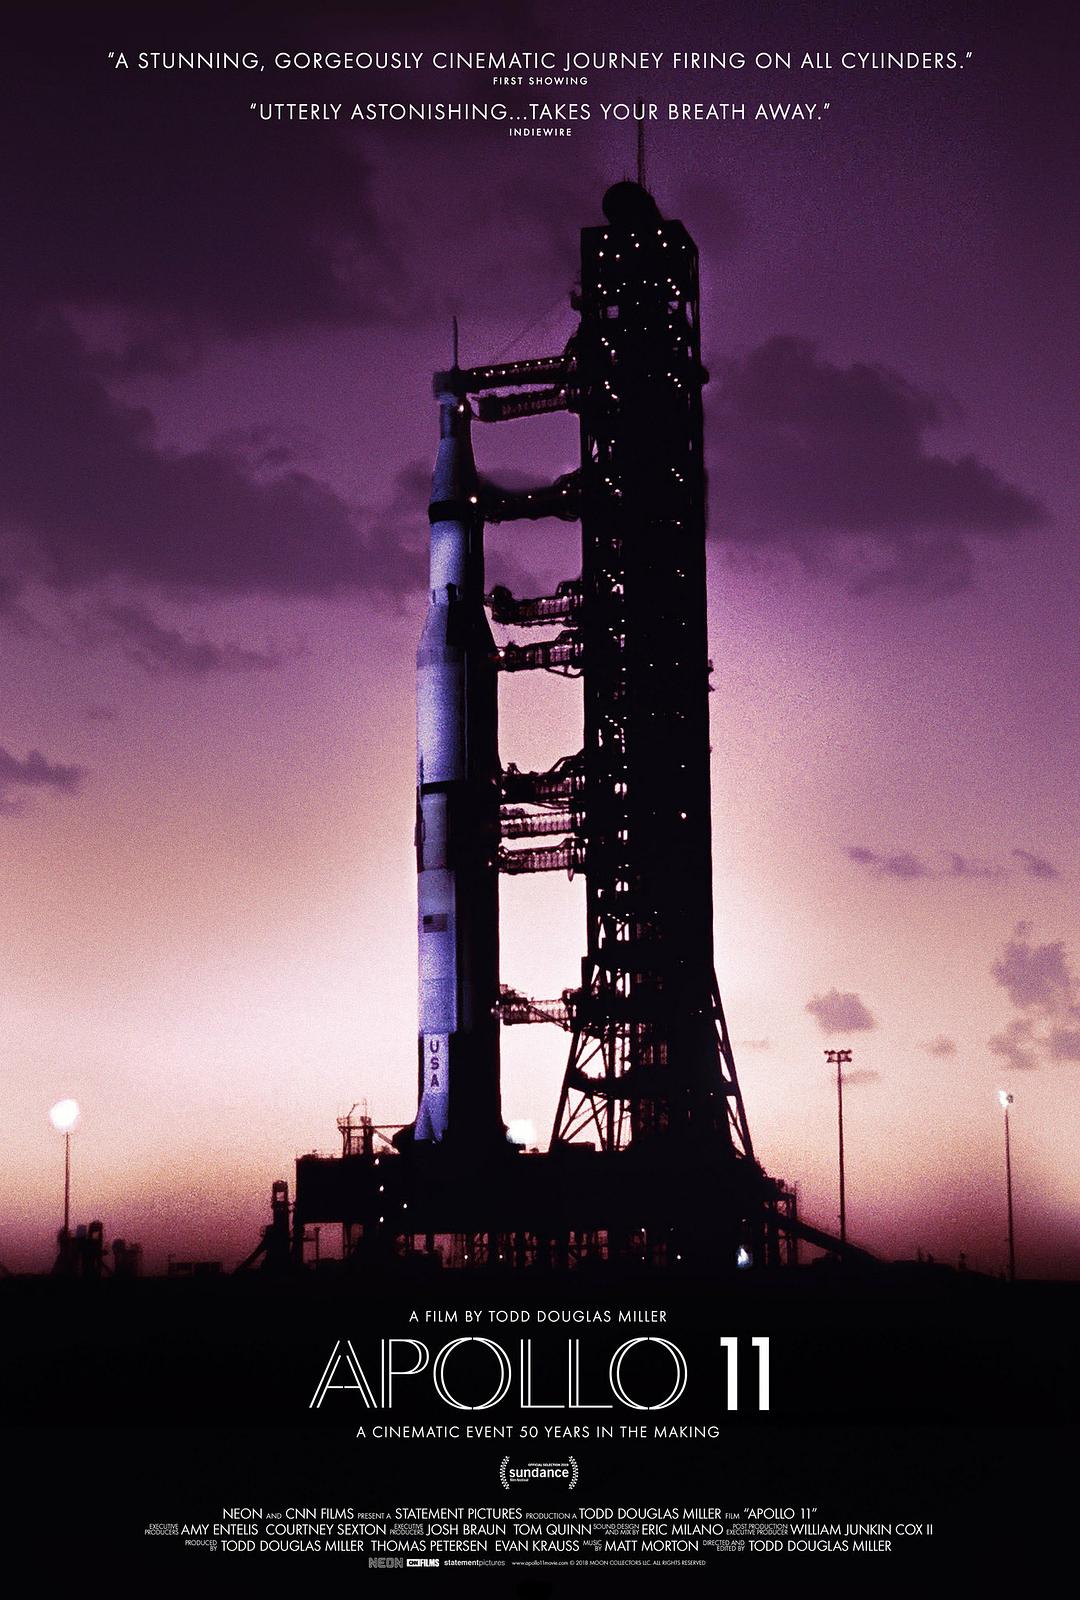 阿波罗11号/阿波罗登月 Apollo.11.2019.DOCU.2160p.BluRay.REMUX.HEVC.DTS-HD.MA.5.1-FGT 53.23GB-1.png